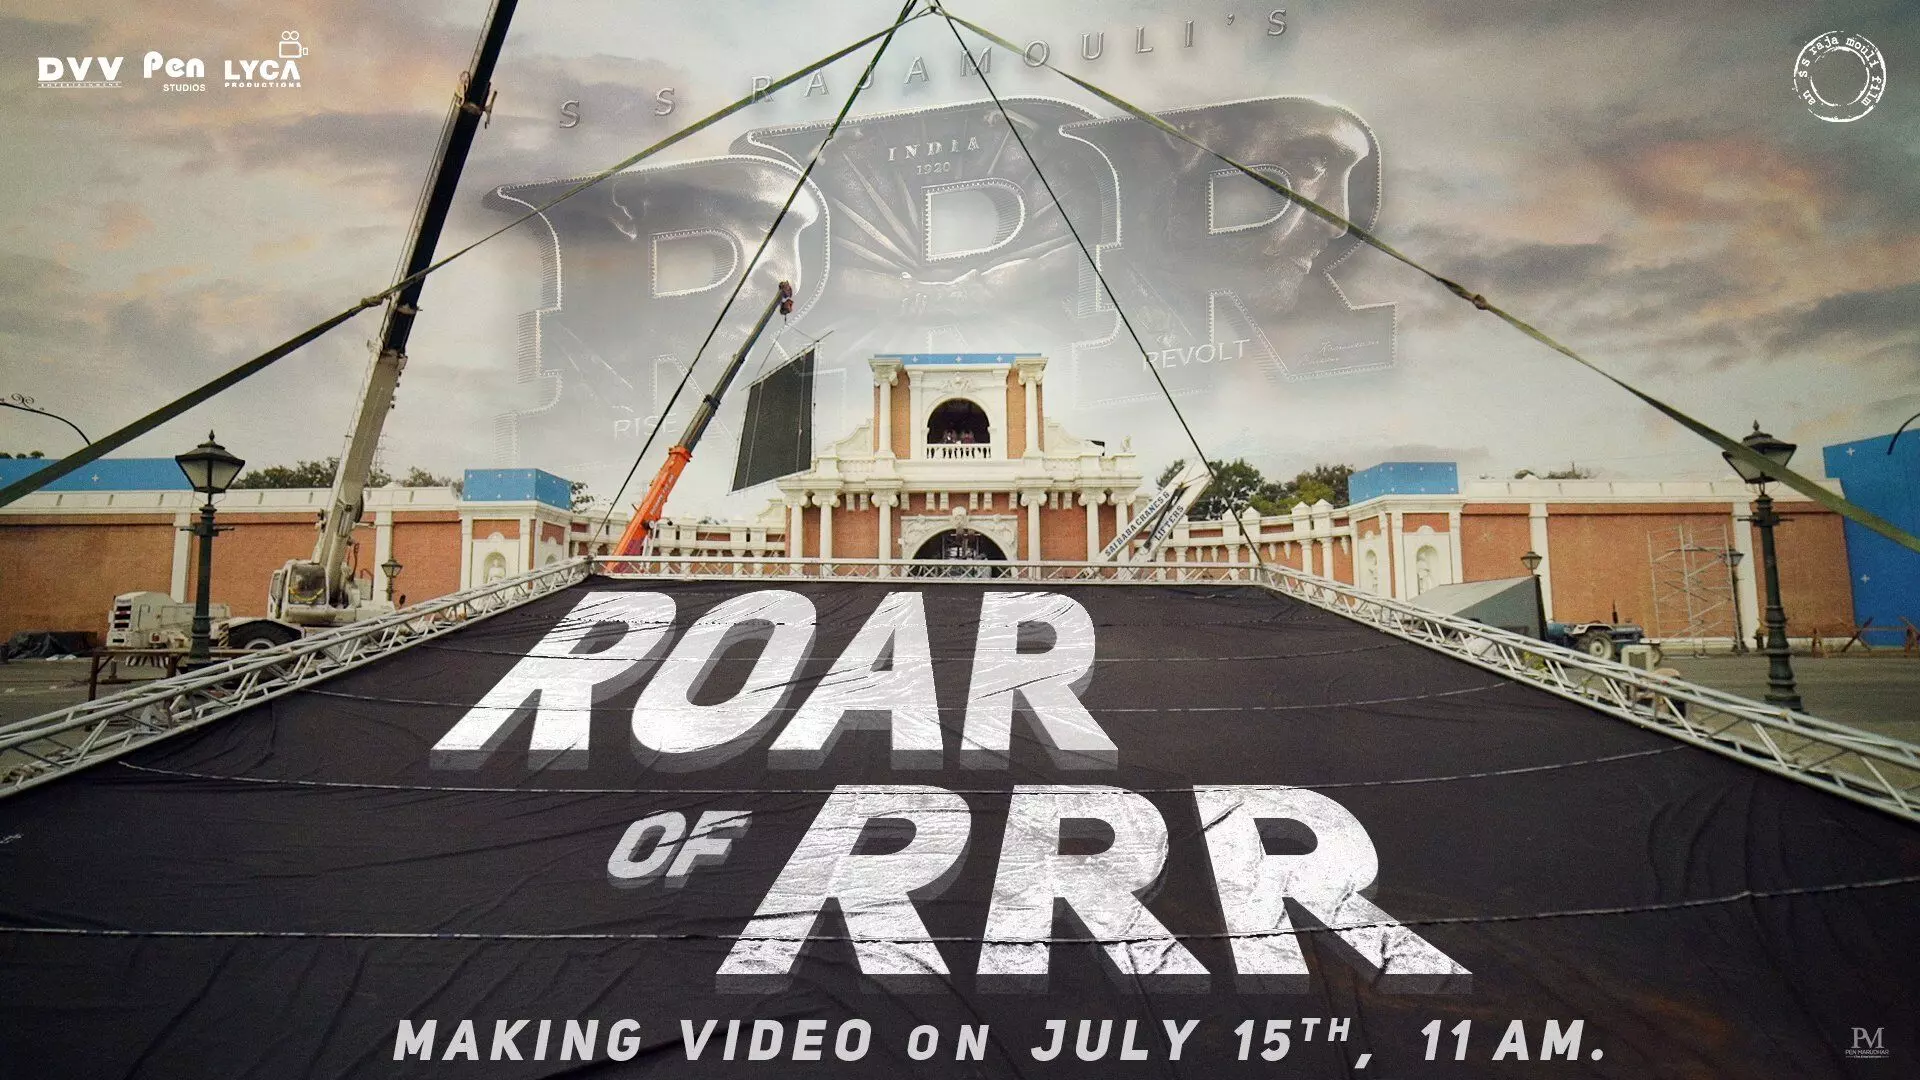 இன்று காலை 11:00 மணிக்கு வெளியாகும் Roar of RRR வீடியோ!